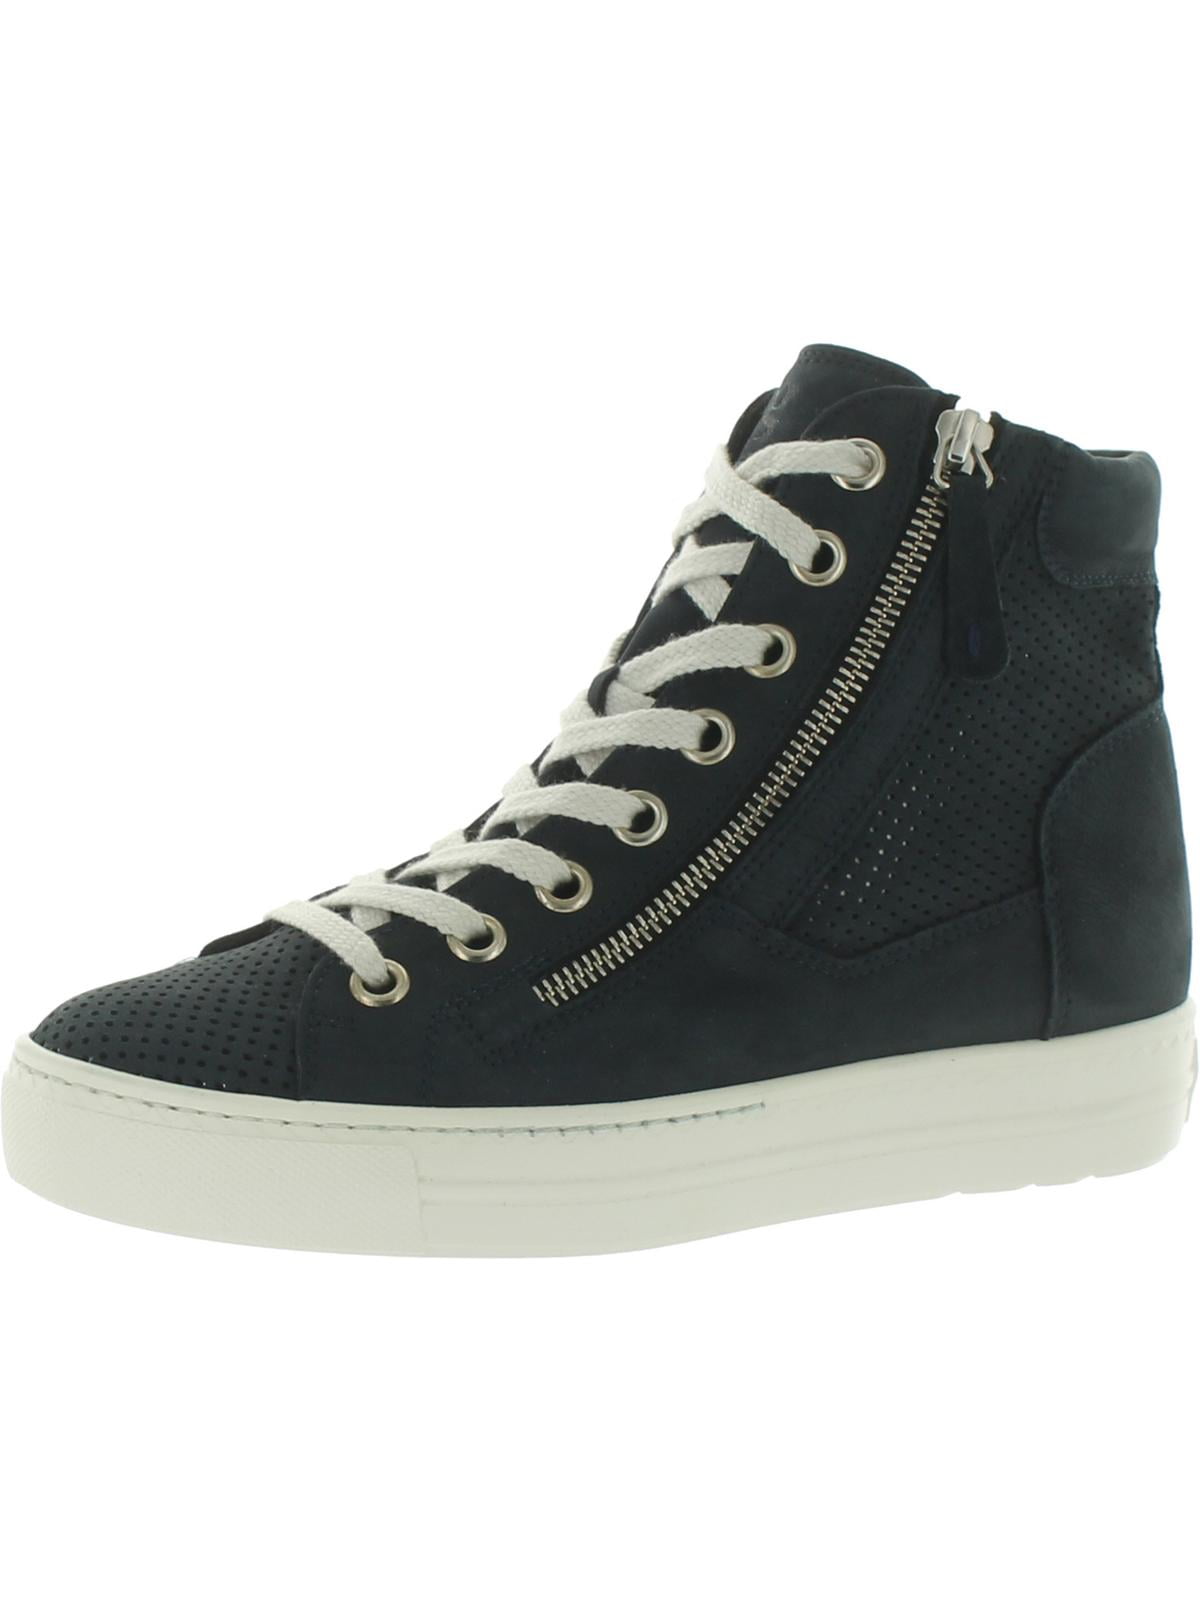 Paul Green Rachel Sneakers | Zappos.com